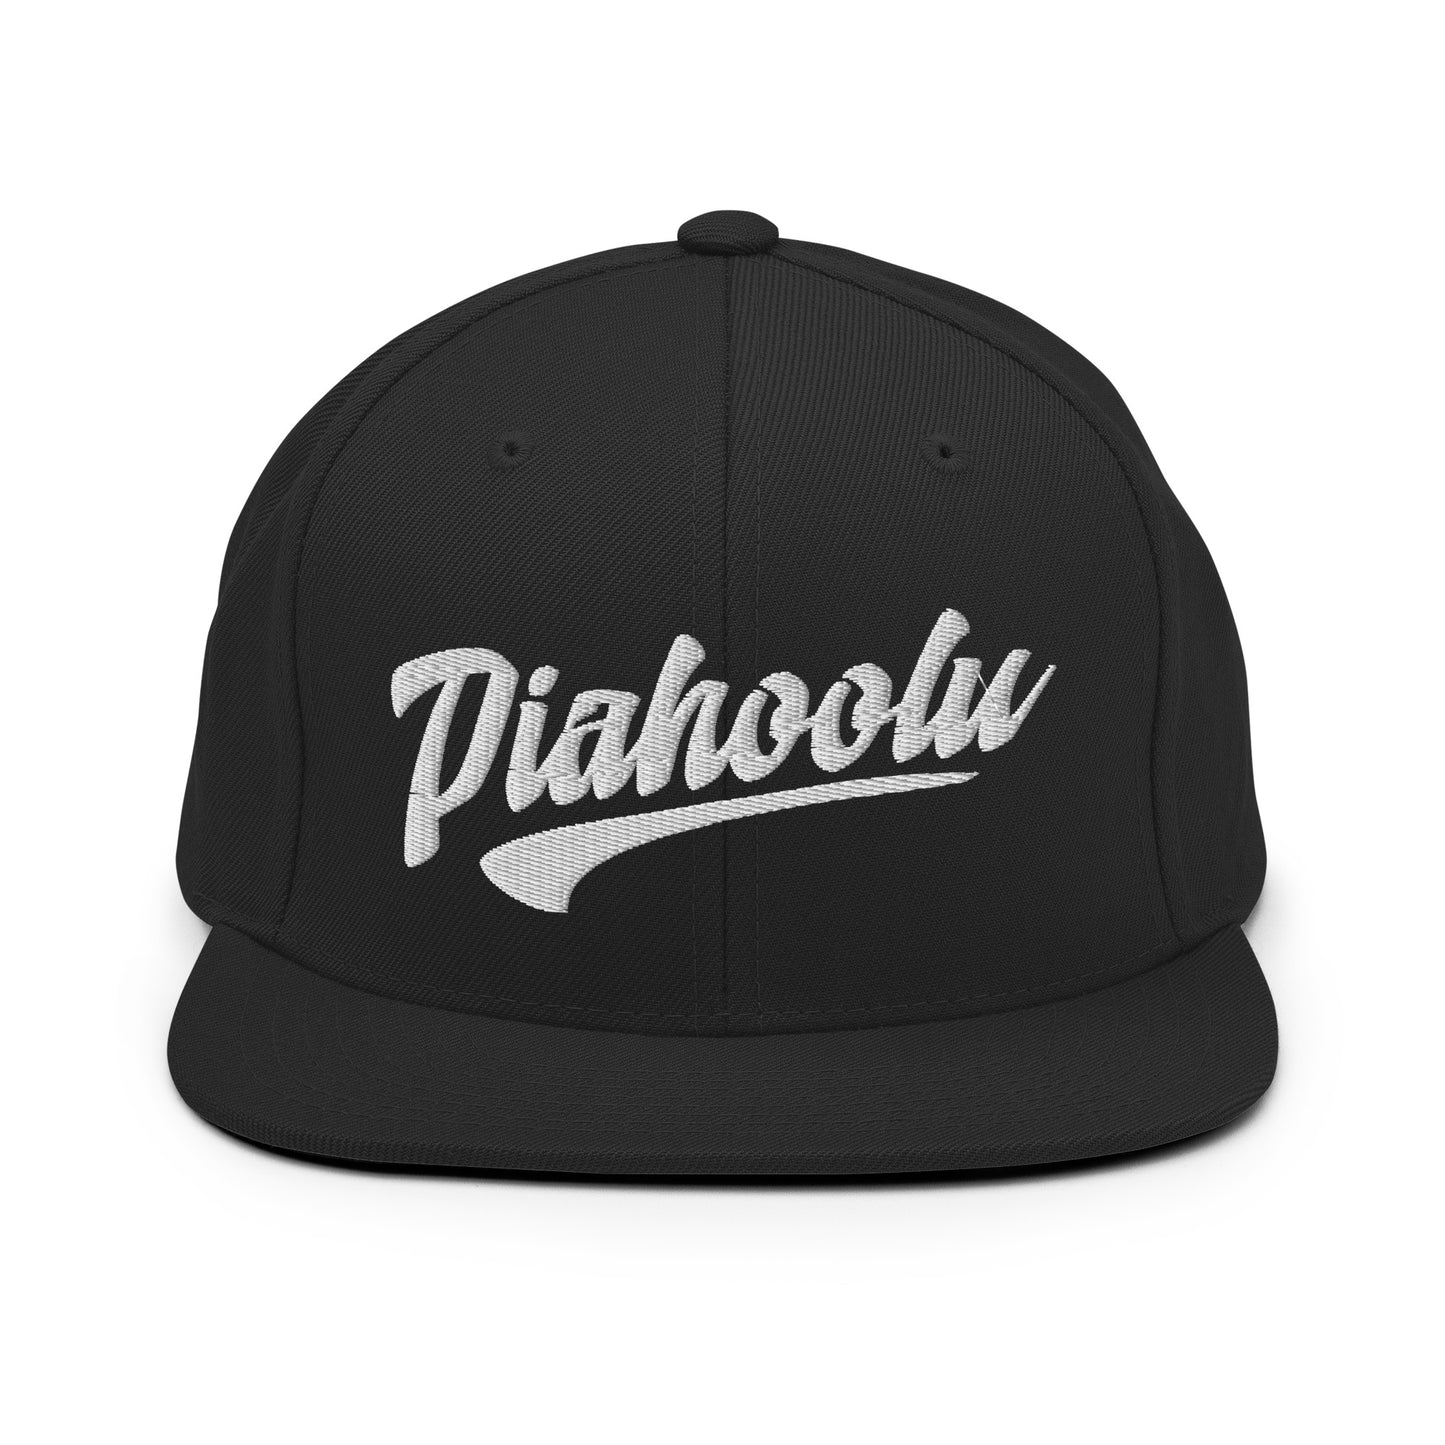 Piahoolu - Snapback